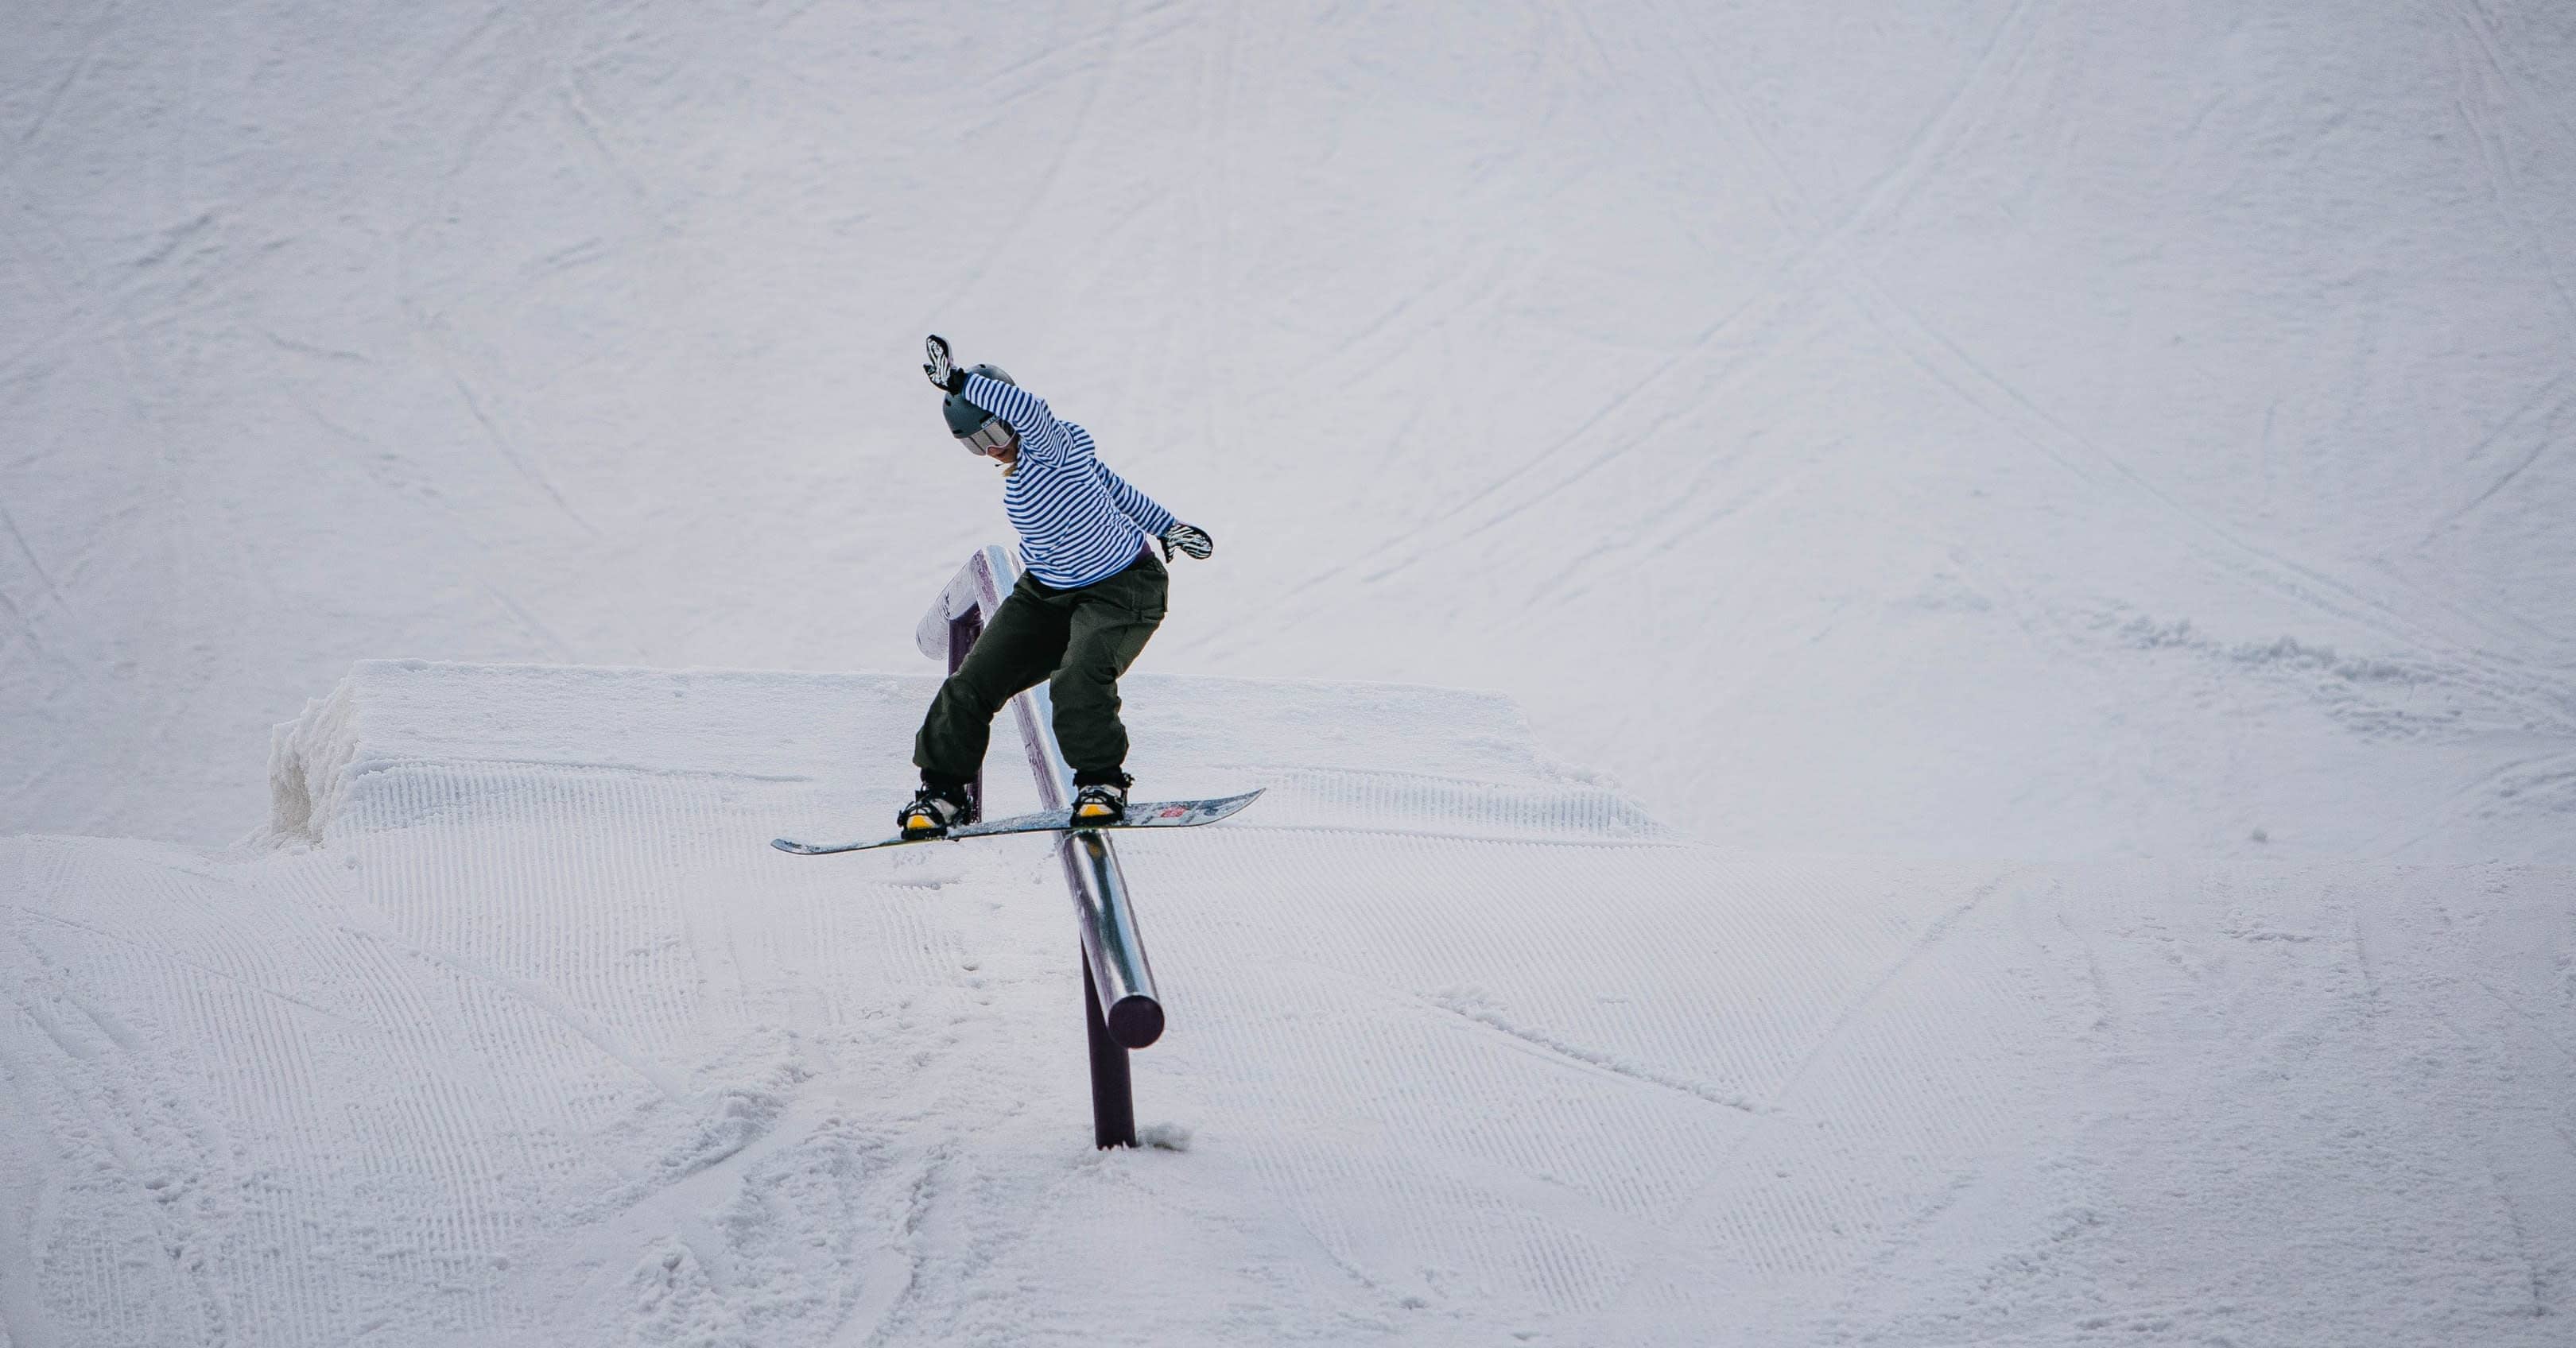 Carola Niemelä tuomassa Suomelle maapaikkaa olympialaisiin  – ylsi uransa parhaaseen suoritukseen slopestylen maailmancupissa: ”Jalat ihan tärisi”